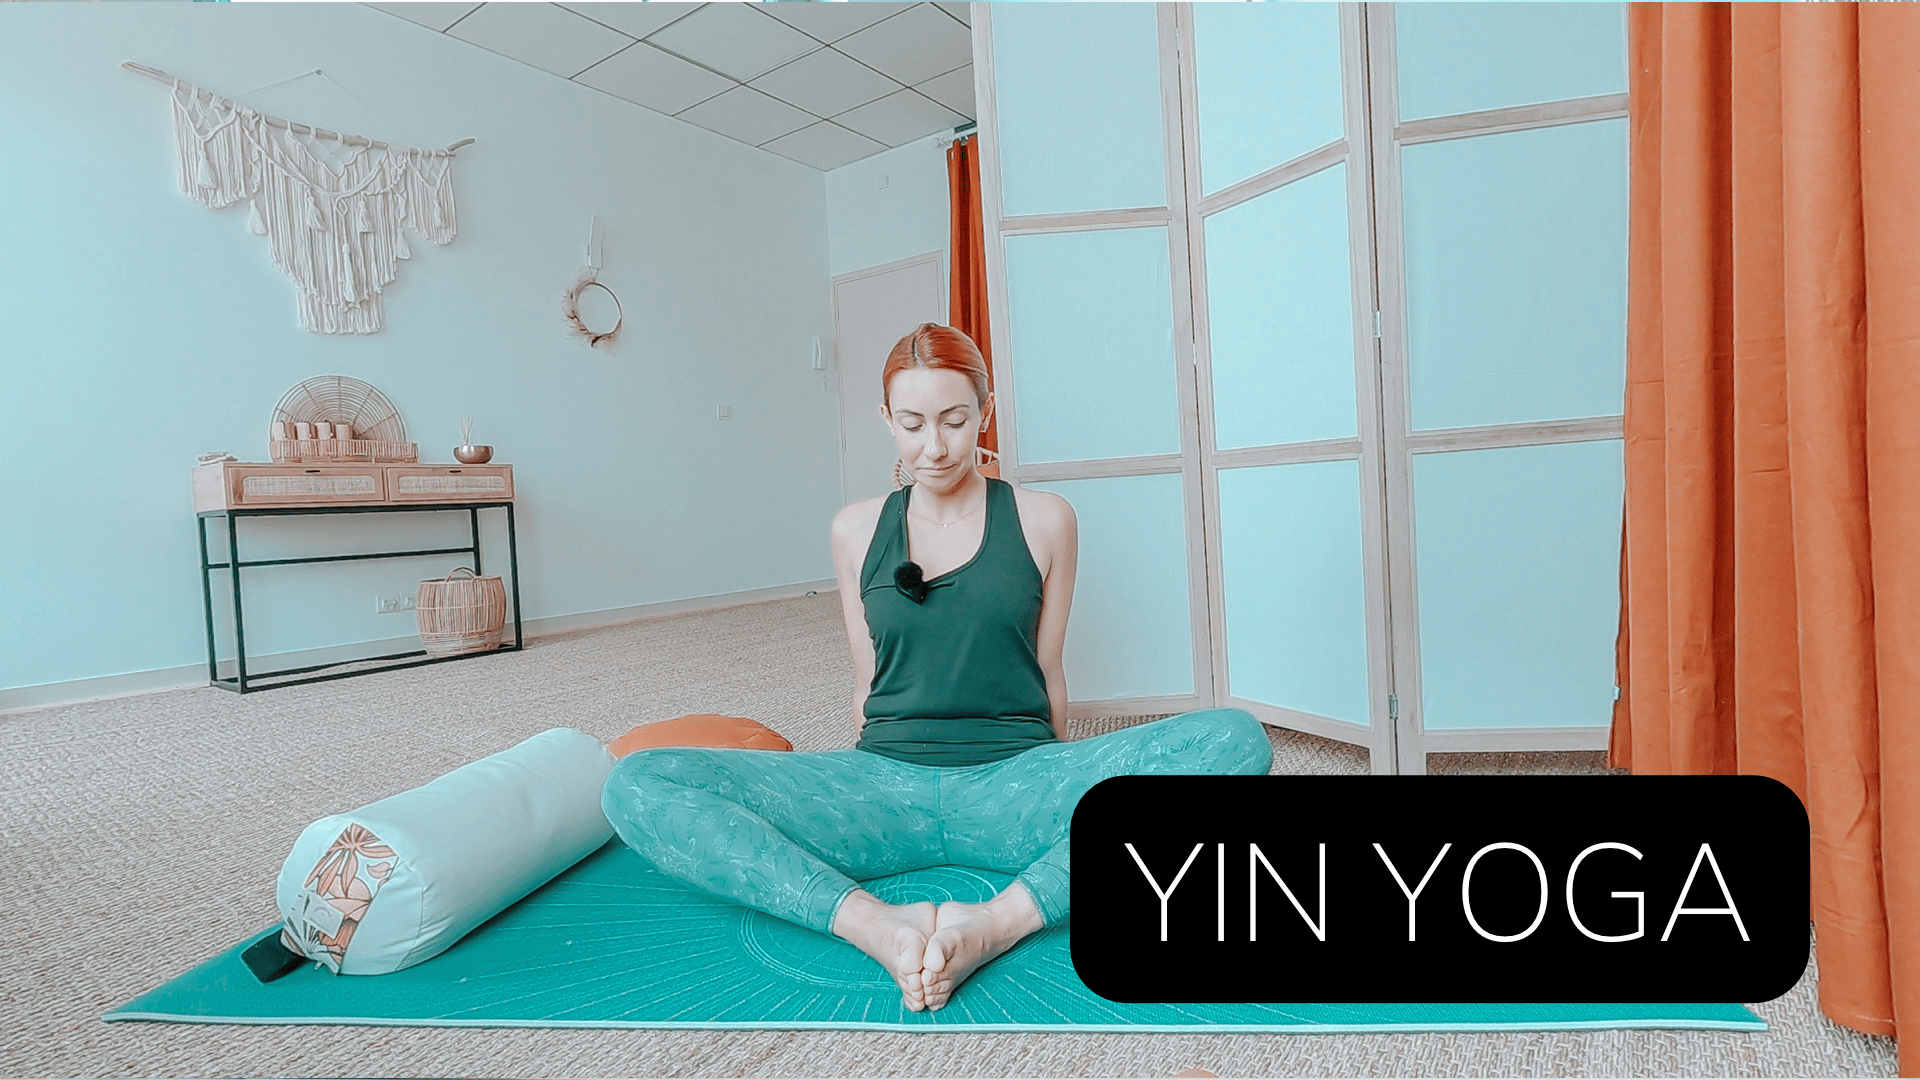 Yin Yoga débutant - développer la joie